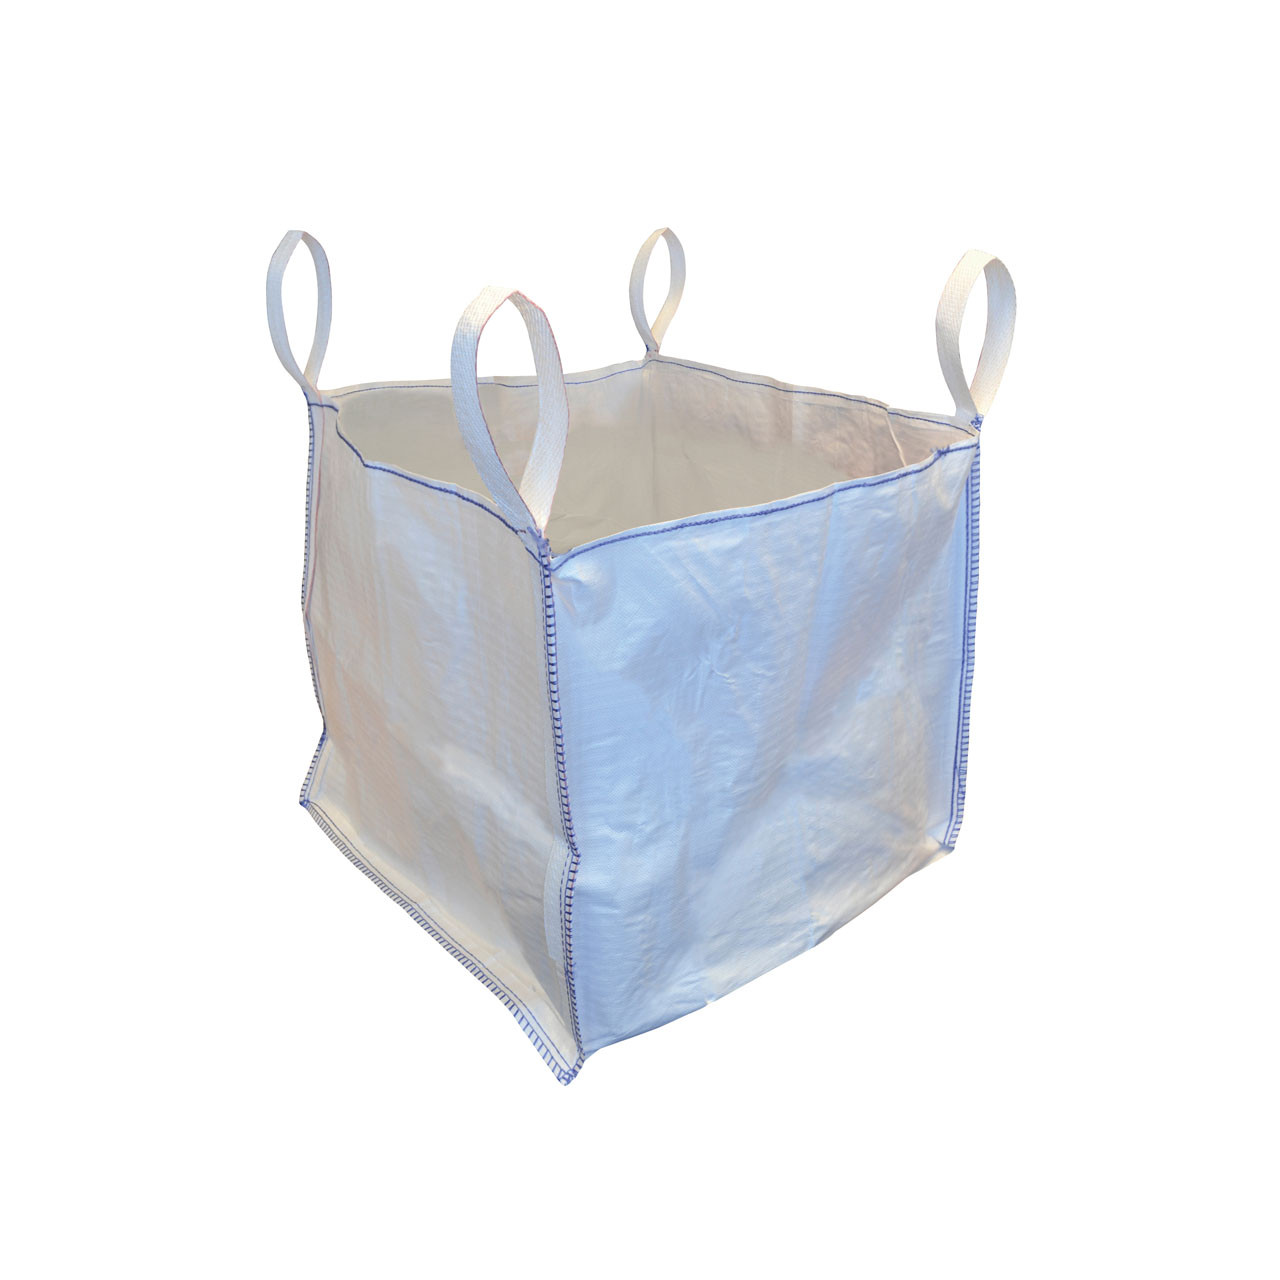 One Tonne Bags for Sale - FIBC Bulk Bags | Buy Now – JMS Bridge